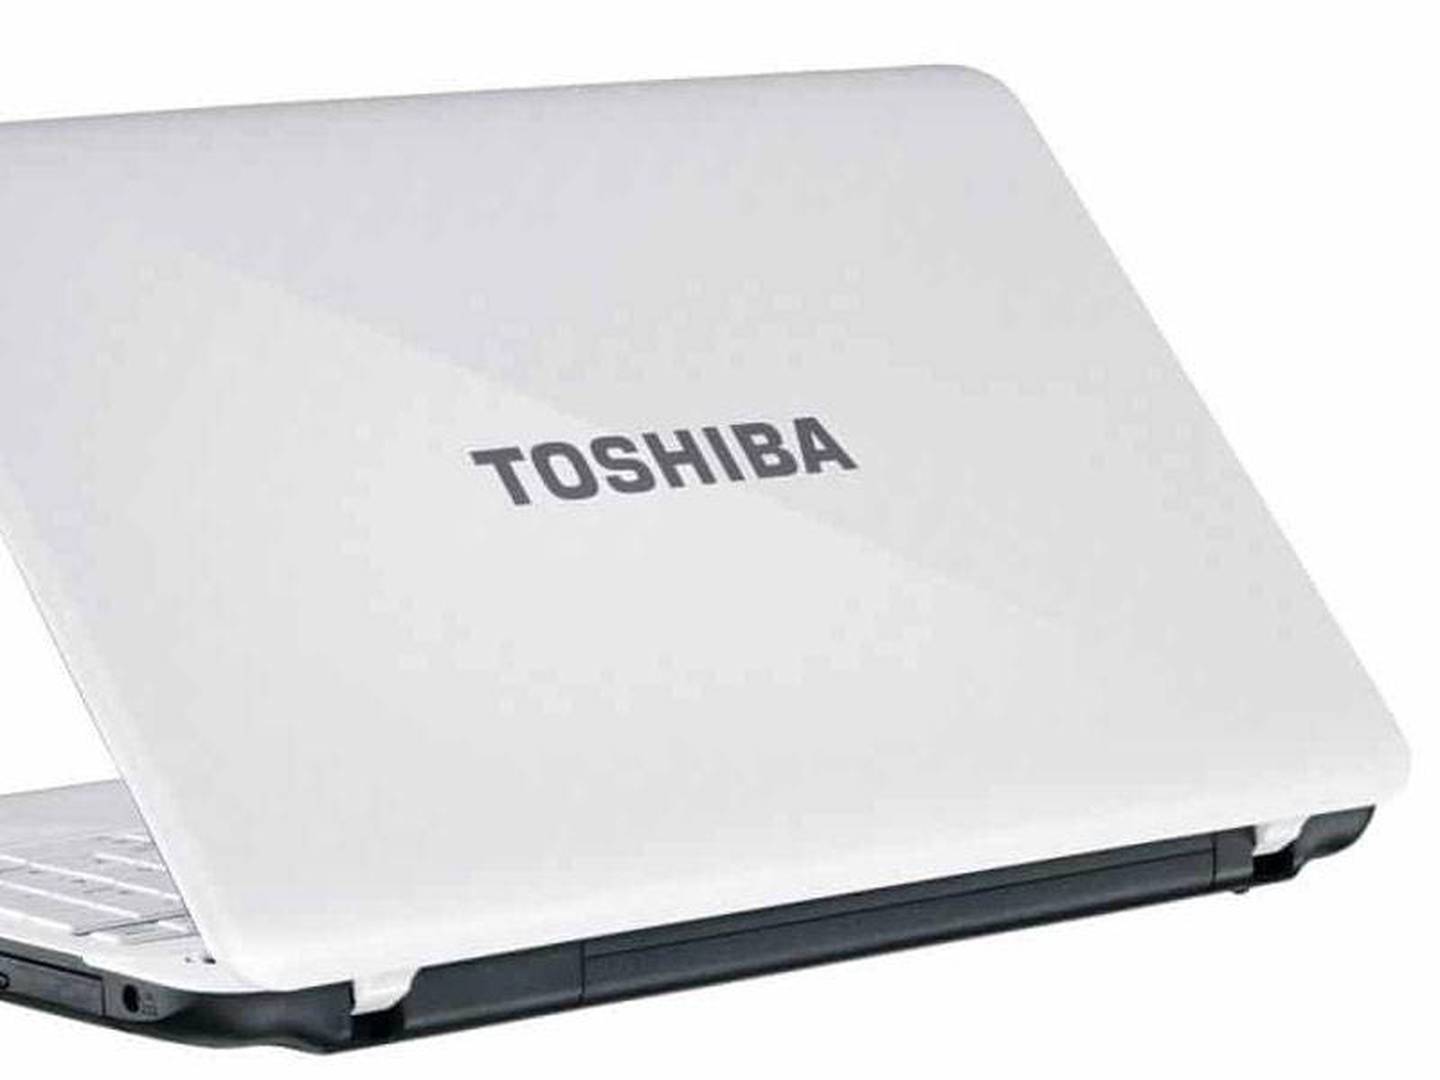 Toshiba ahora ha por completo su línea laptops – FayerWayer